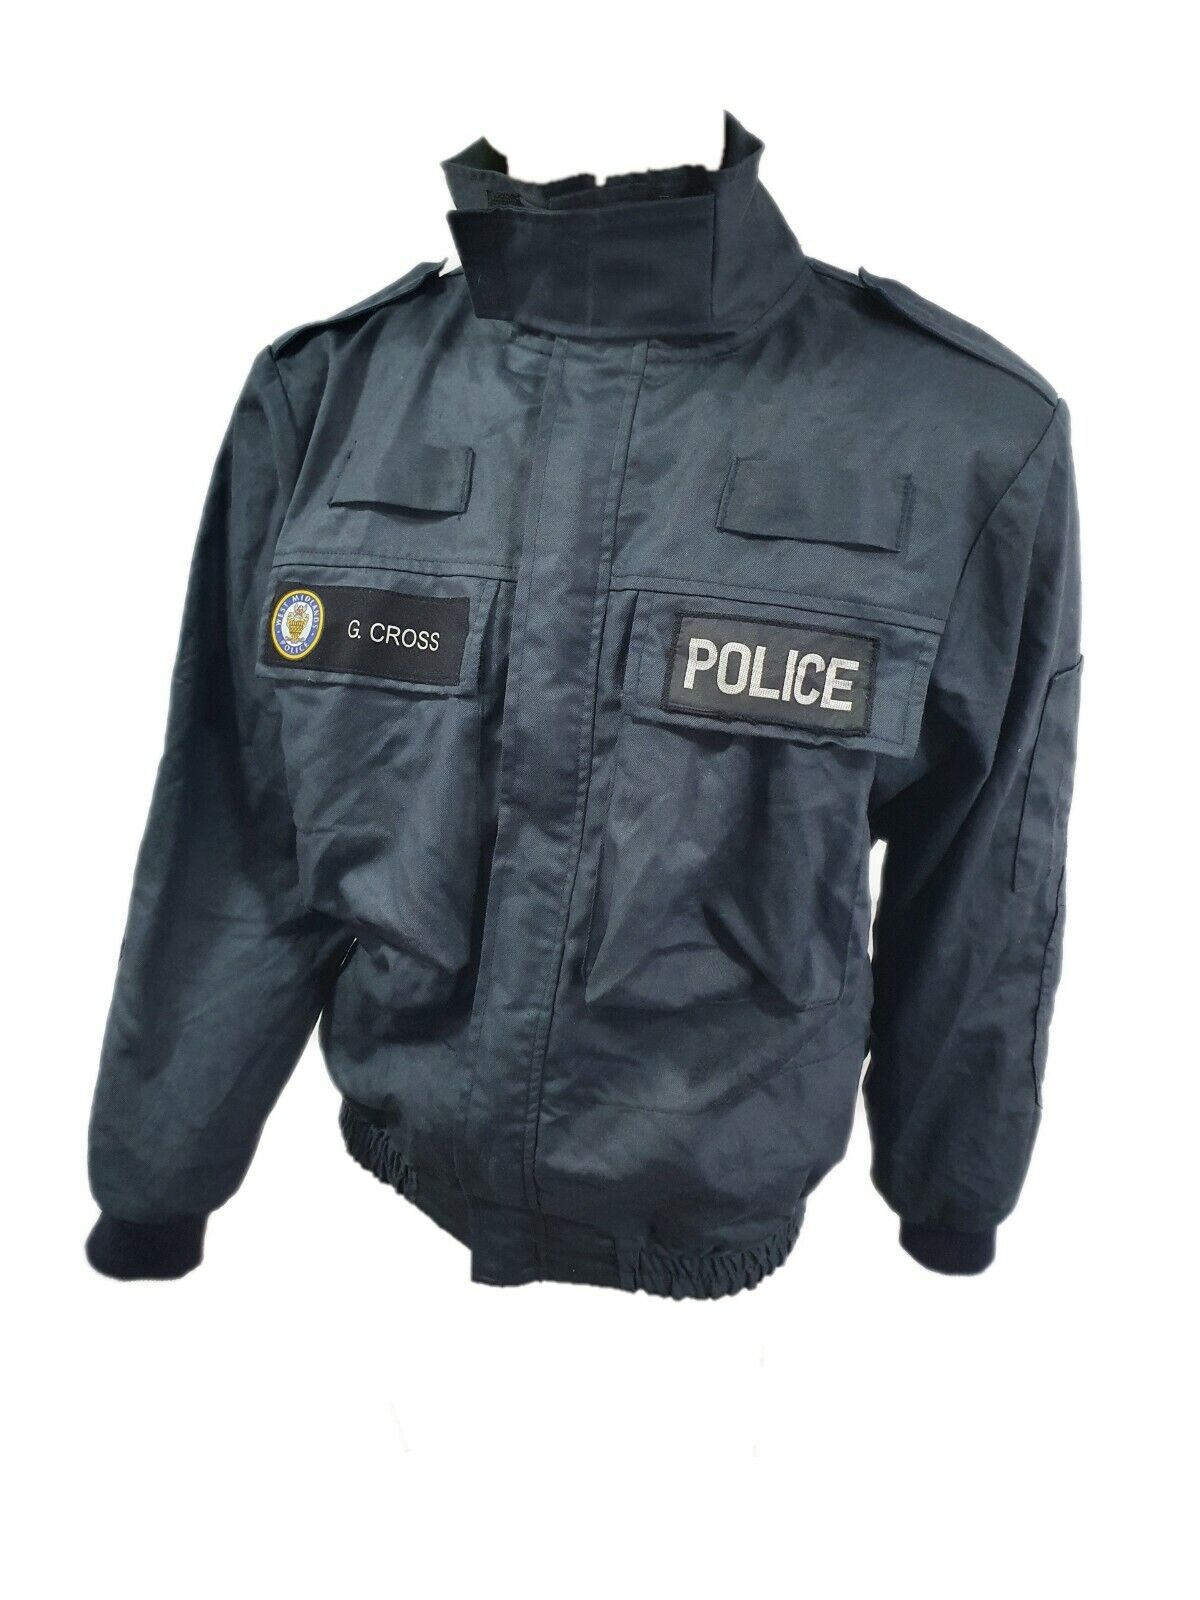 British Police Jacket Blue West Midlands Police UK NOMEX 93% Kevlar5%